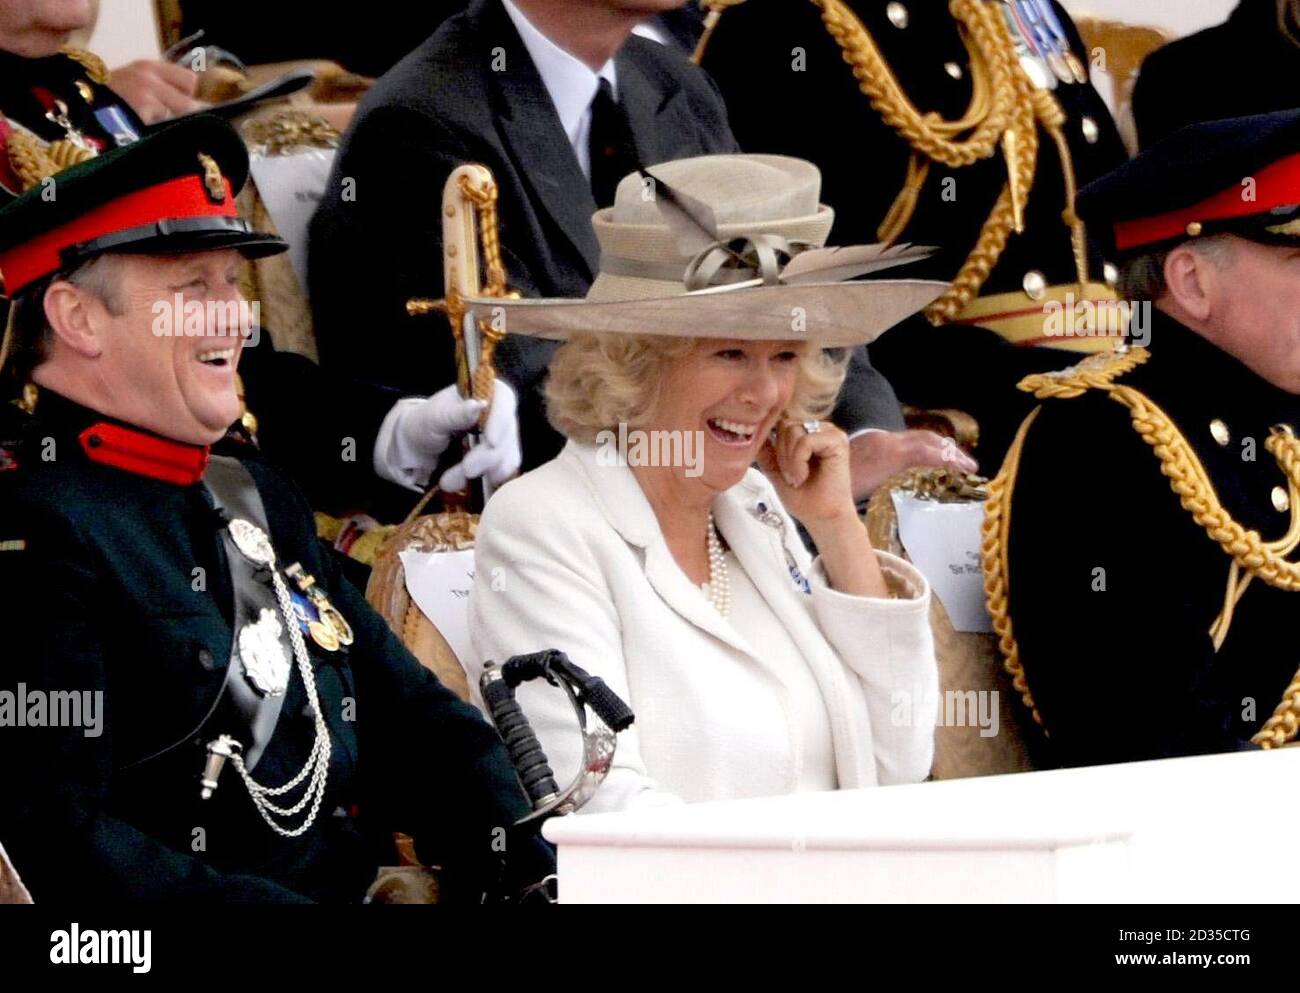 La duchesse de Cornwall rit lors d'un spectacle au Horse Guards Parade pour célébrer les 100 ans de service de l'Armée territoriale. Banque D'Images